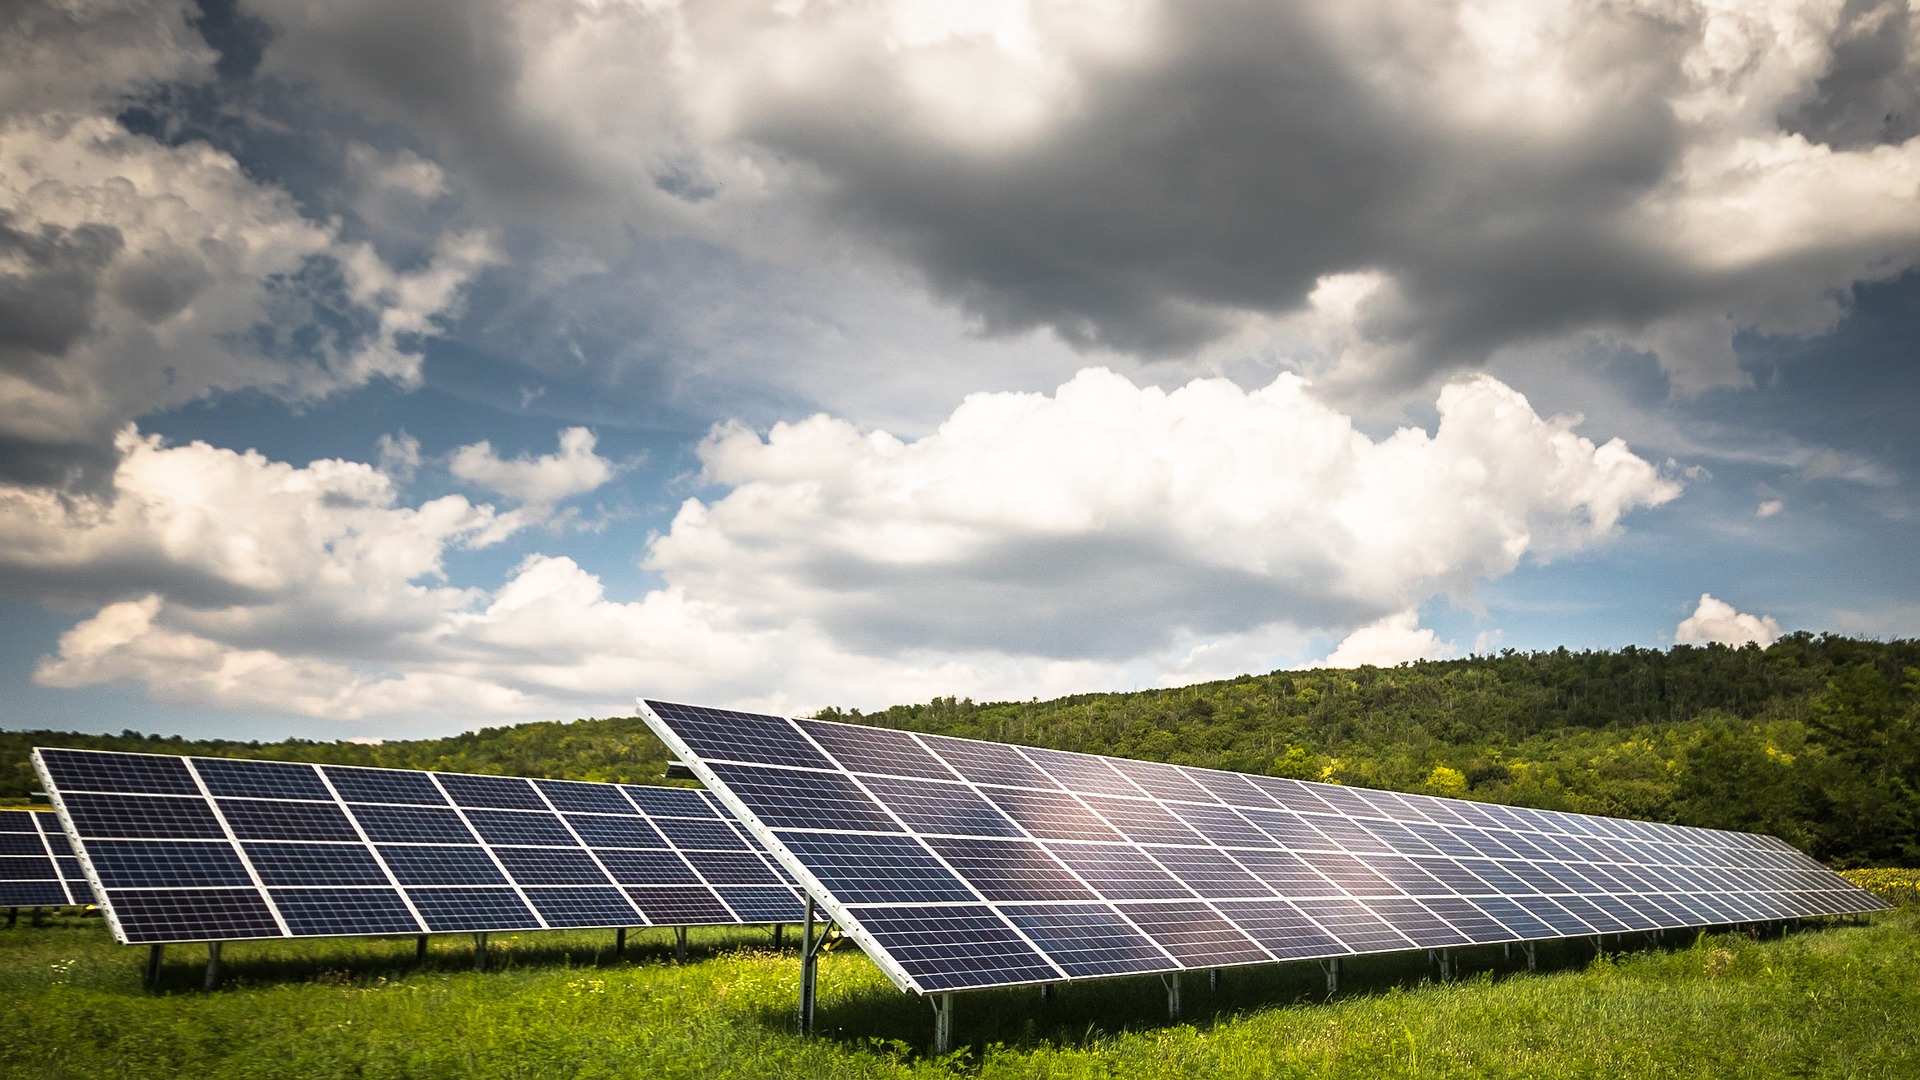 Les fermes et panneaux solaires installés en pleine nature ou dans des zones agricoles ne sont pas écologiques. © Zsuzska321, Pixabay